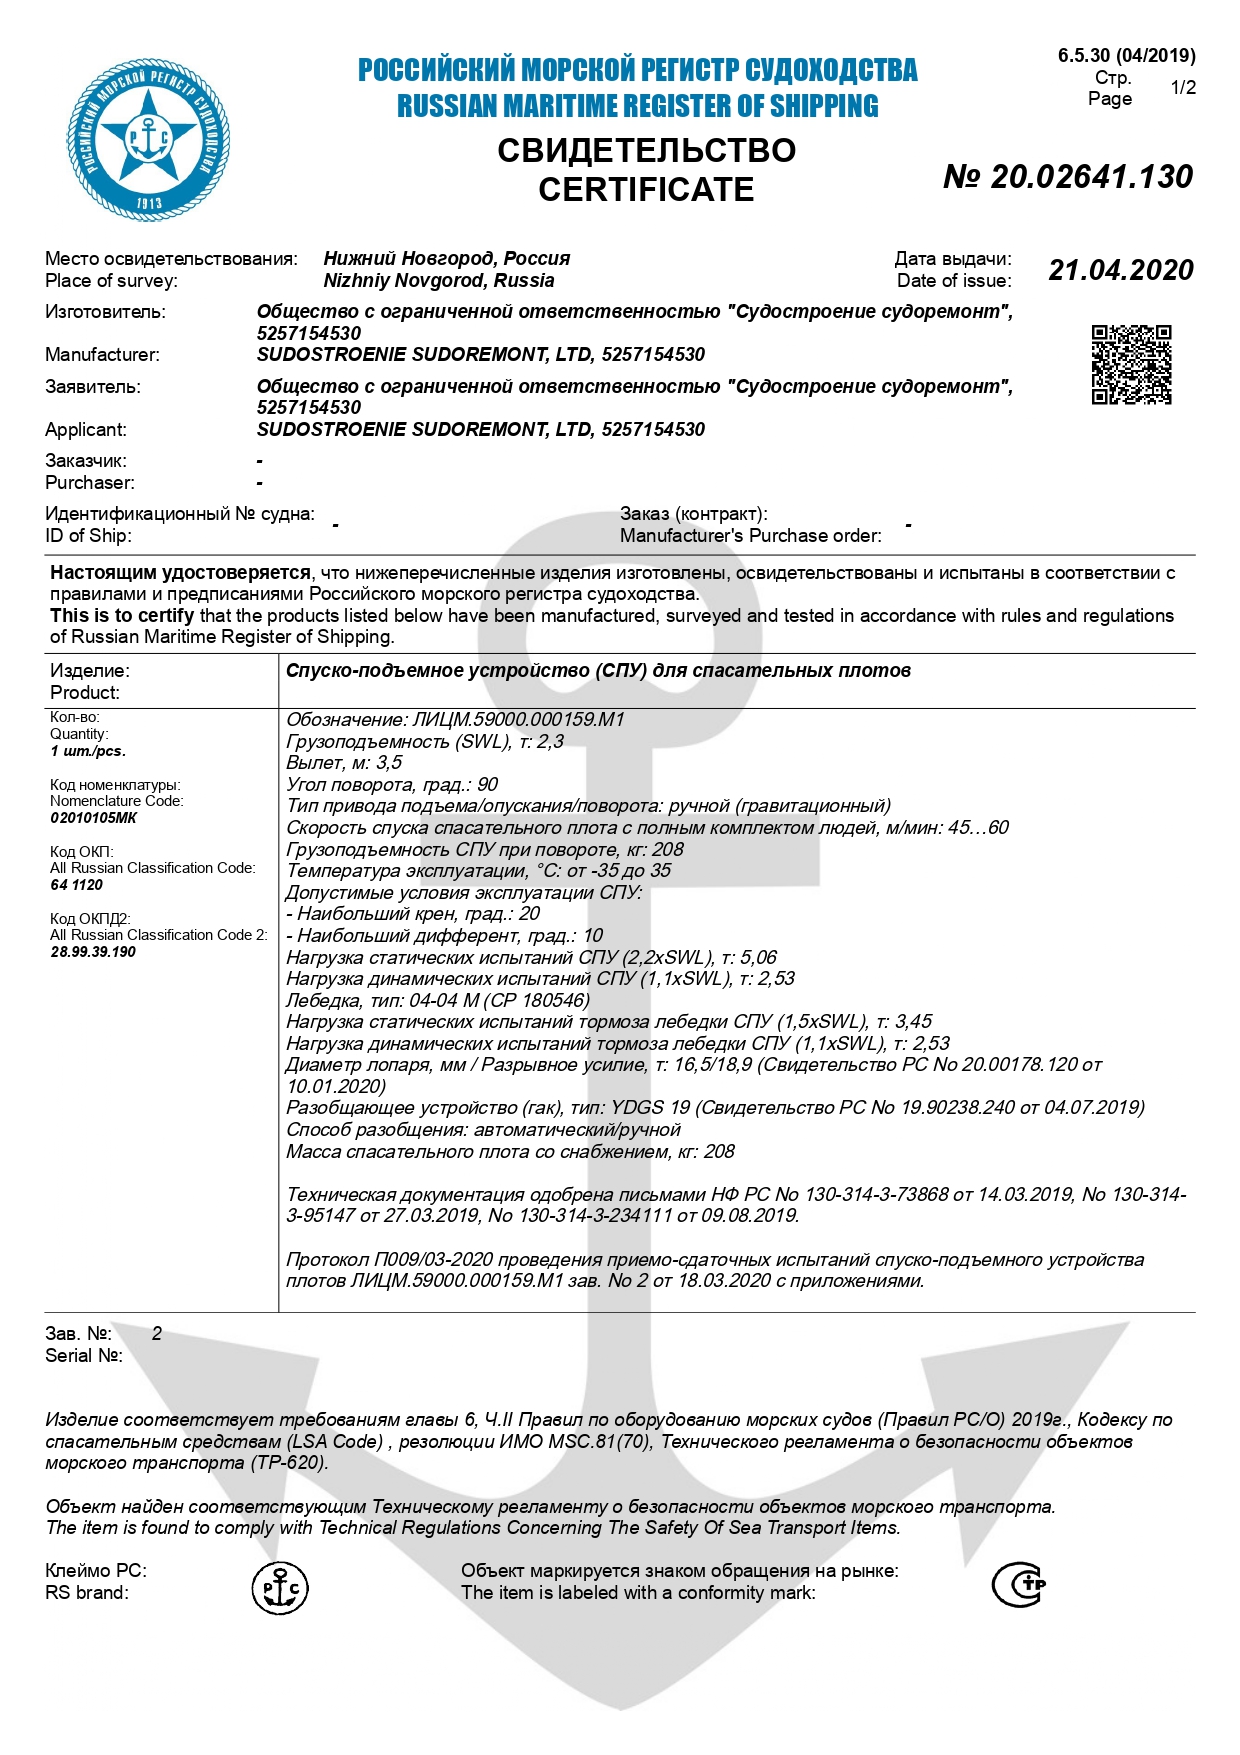 Сертификат Российского Морского Регистра Судоходства на спуско-подъемное устройство для спасательных плотов